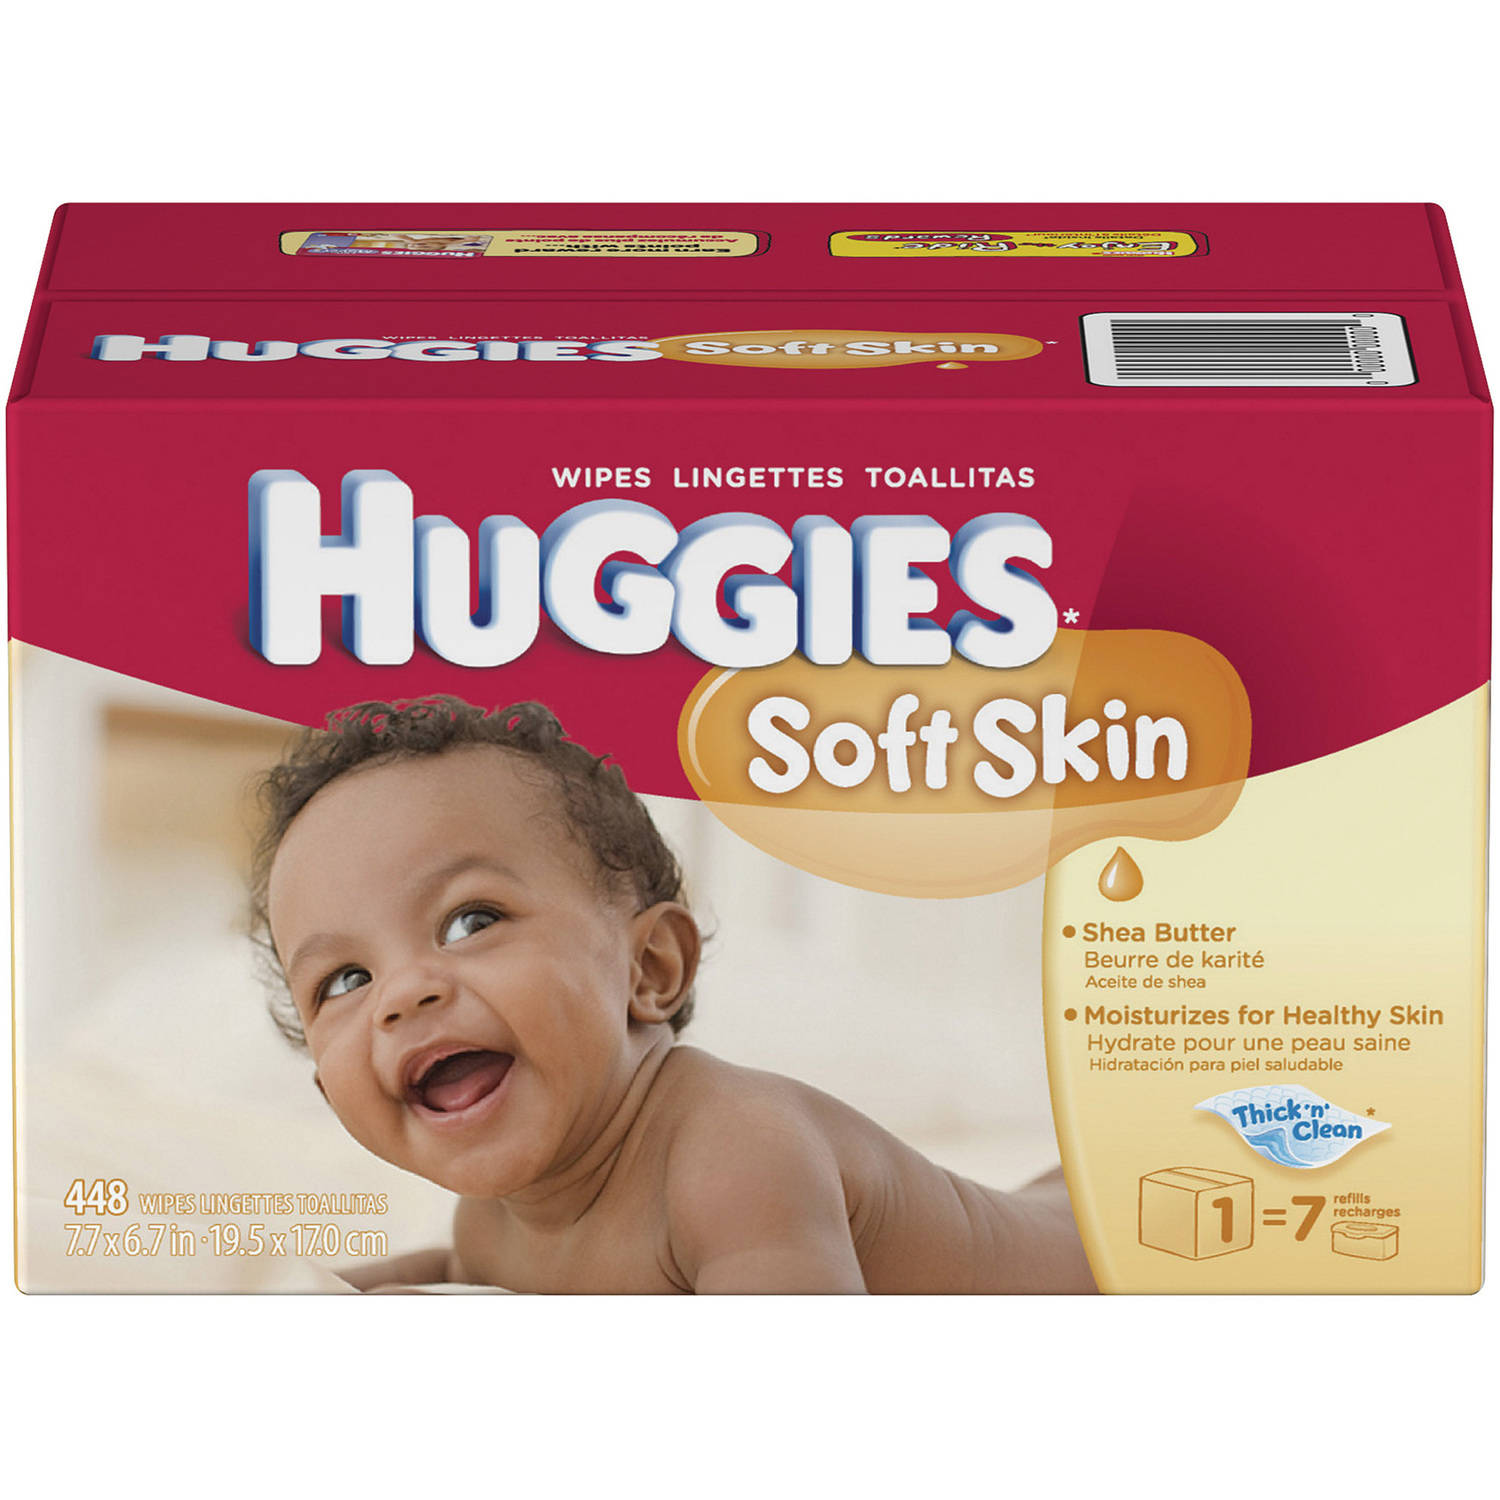 HUGGIES Soft Skin Shea Butter Baby Wipes, 448 sheets